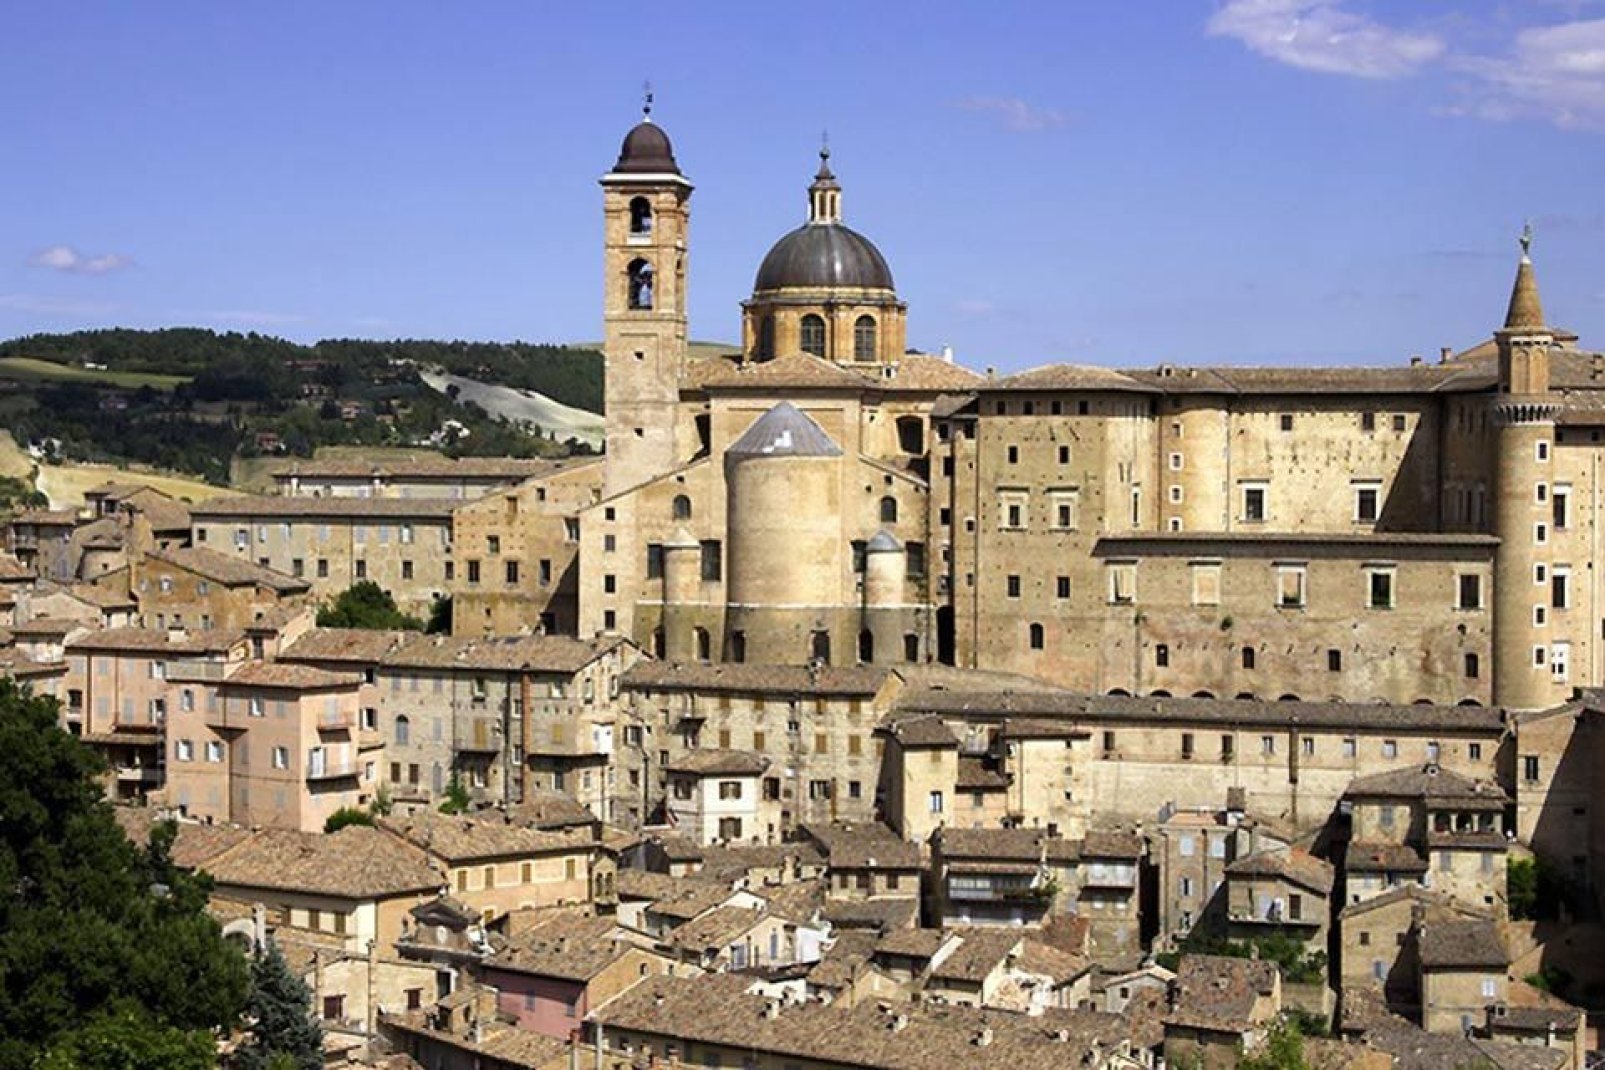 Urbino doit un grand nombre de ses merveilles artistiques au mécénat de la famille Montefeltro, qui avait l'une des cours nobiliaires les plus raffinées de l'Italie de la Renaissance.